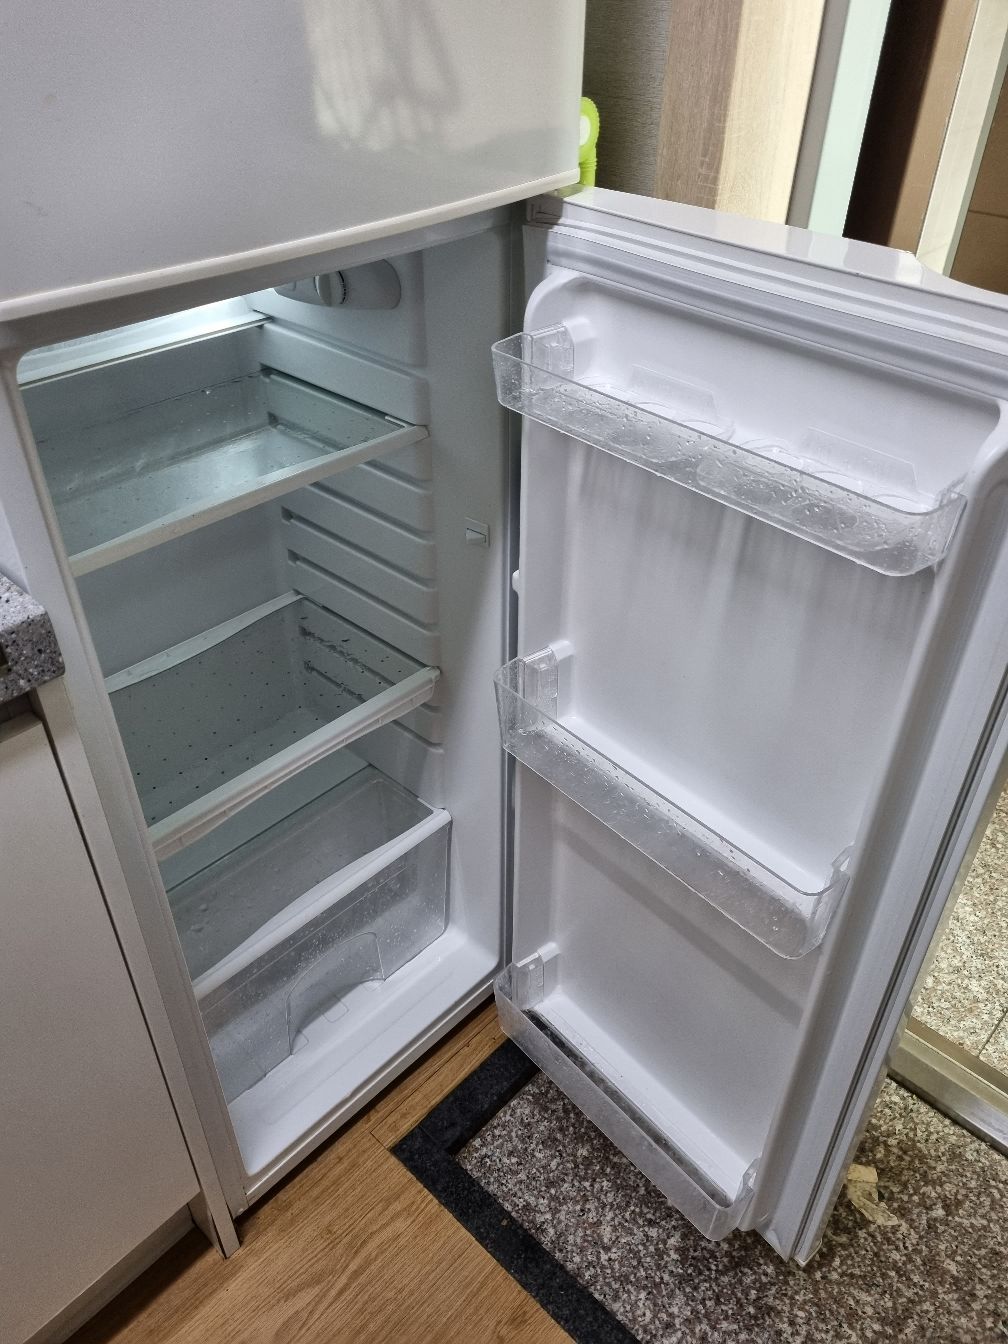 깨끗하게 비워진 냉장고